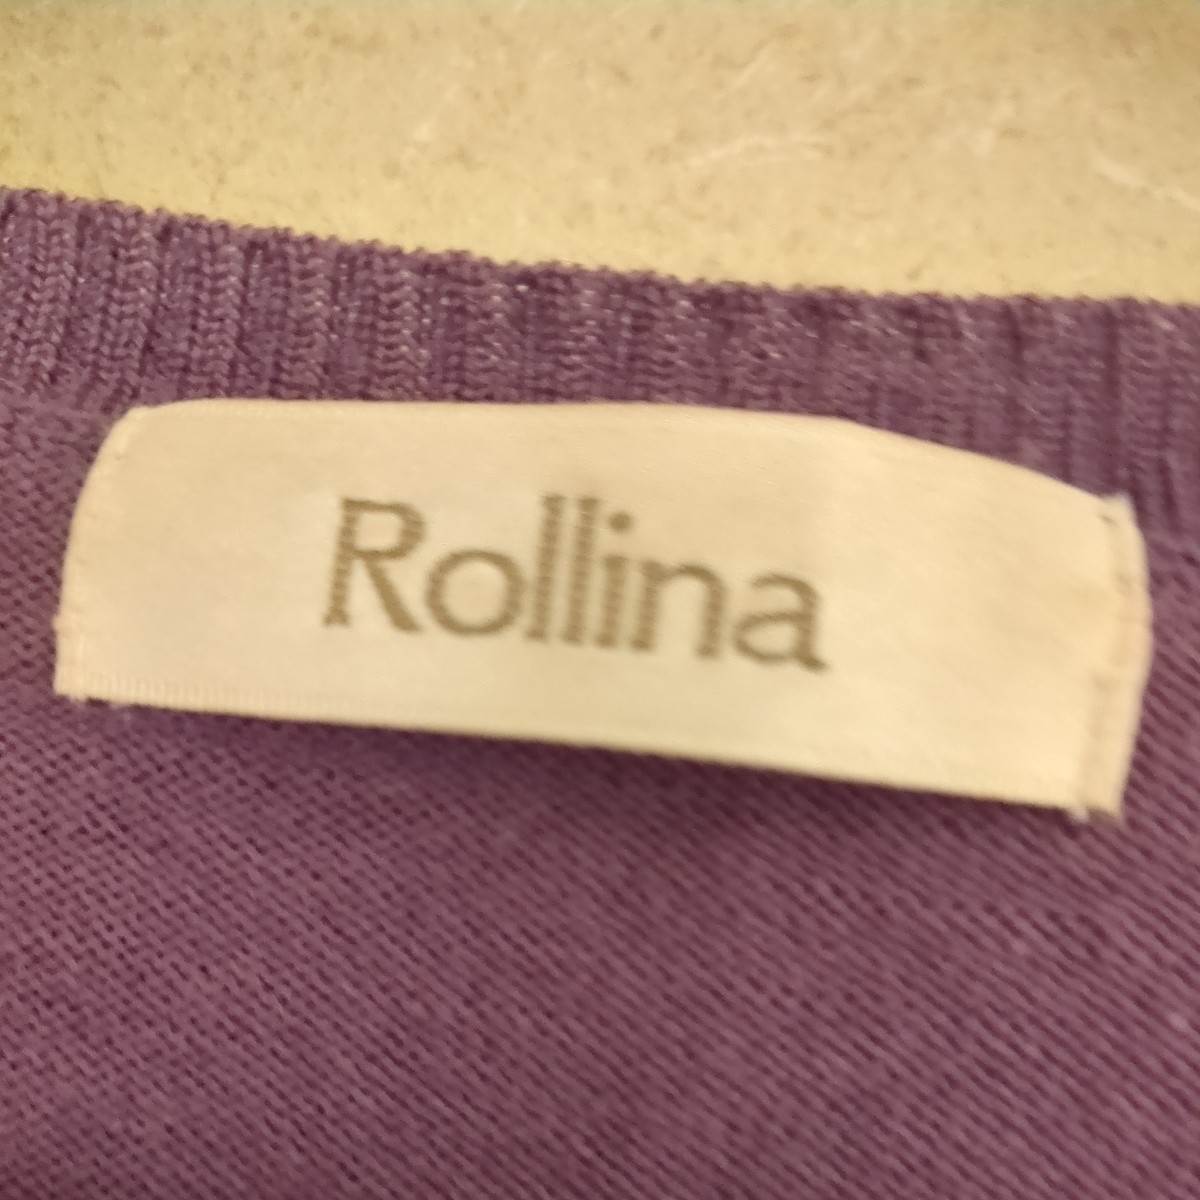 Rollina ロリーナ 薄紫色カーディガン _画像3